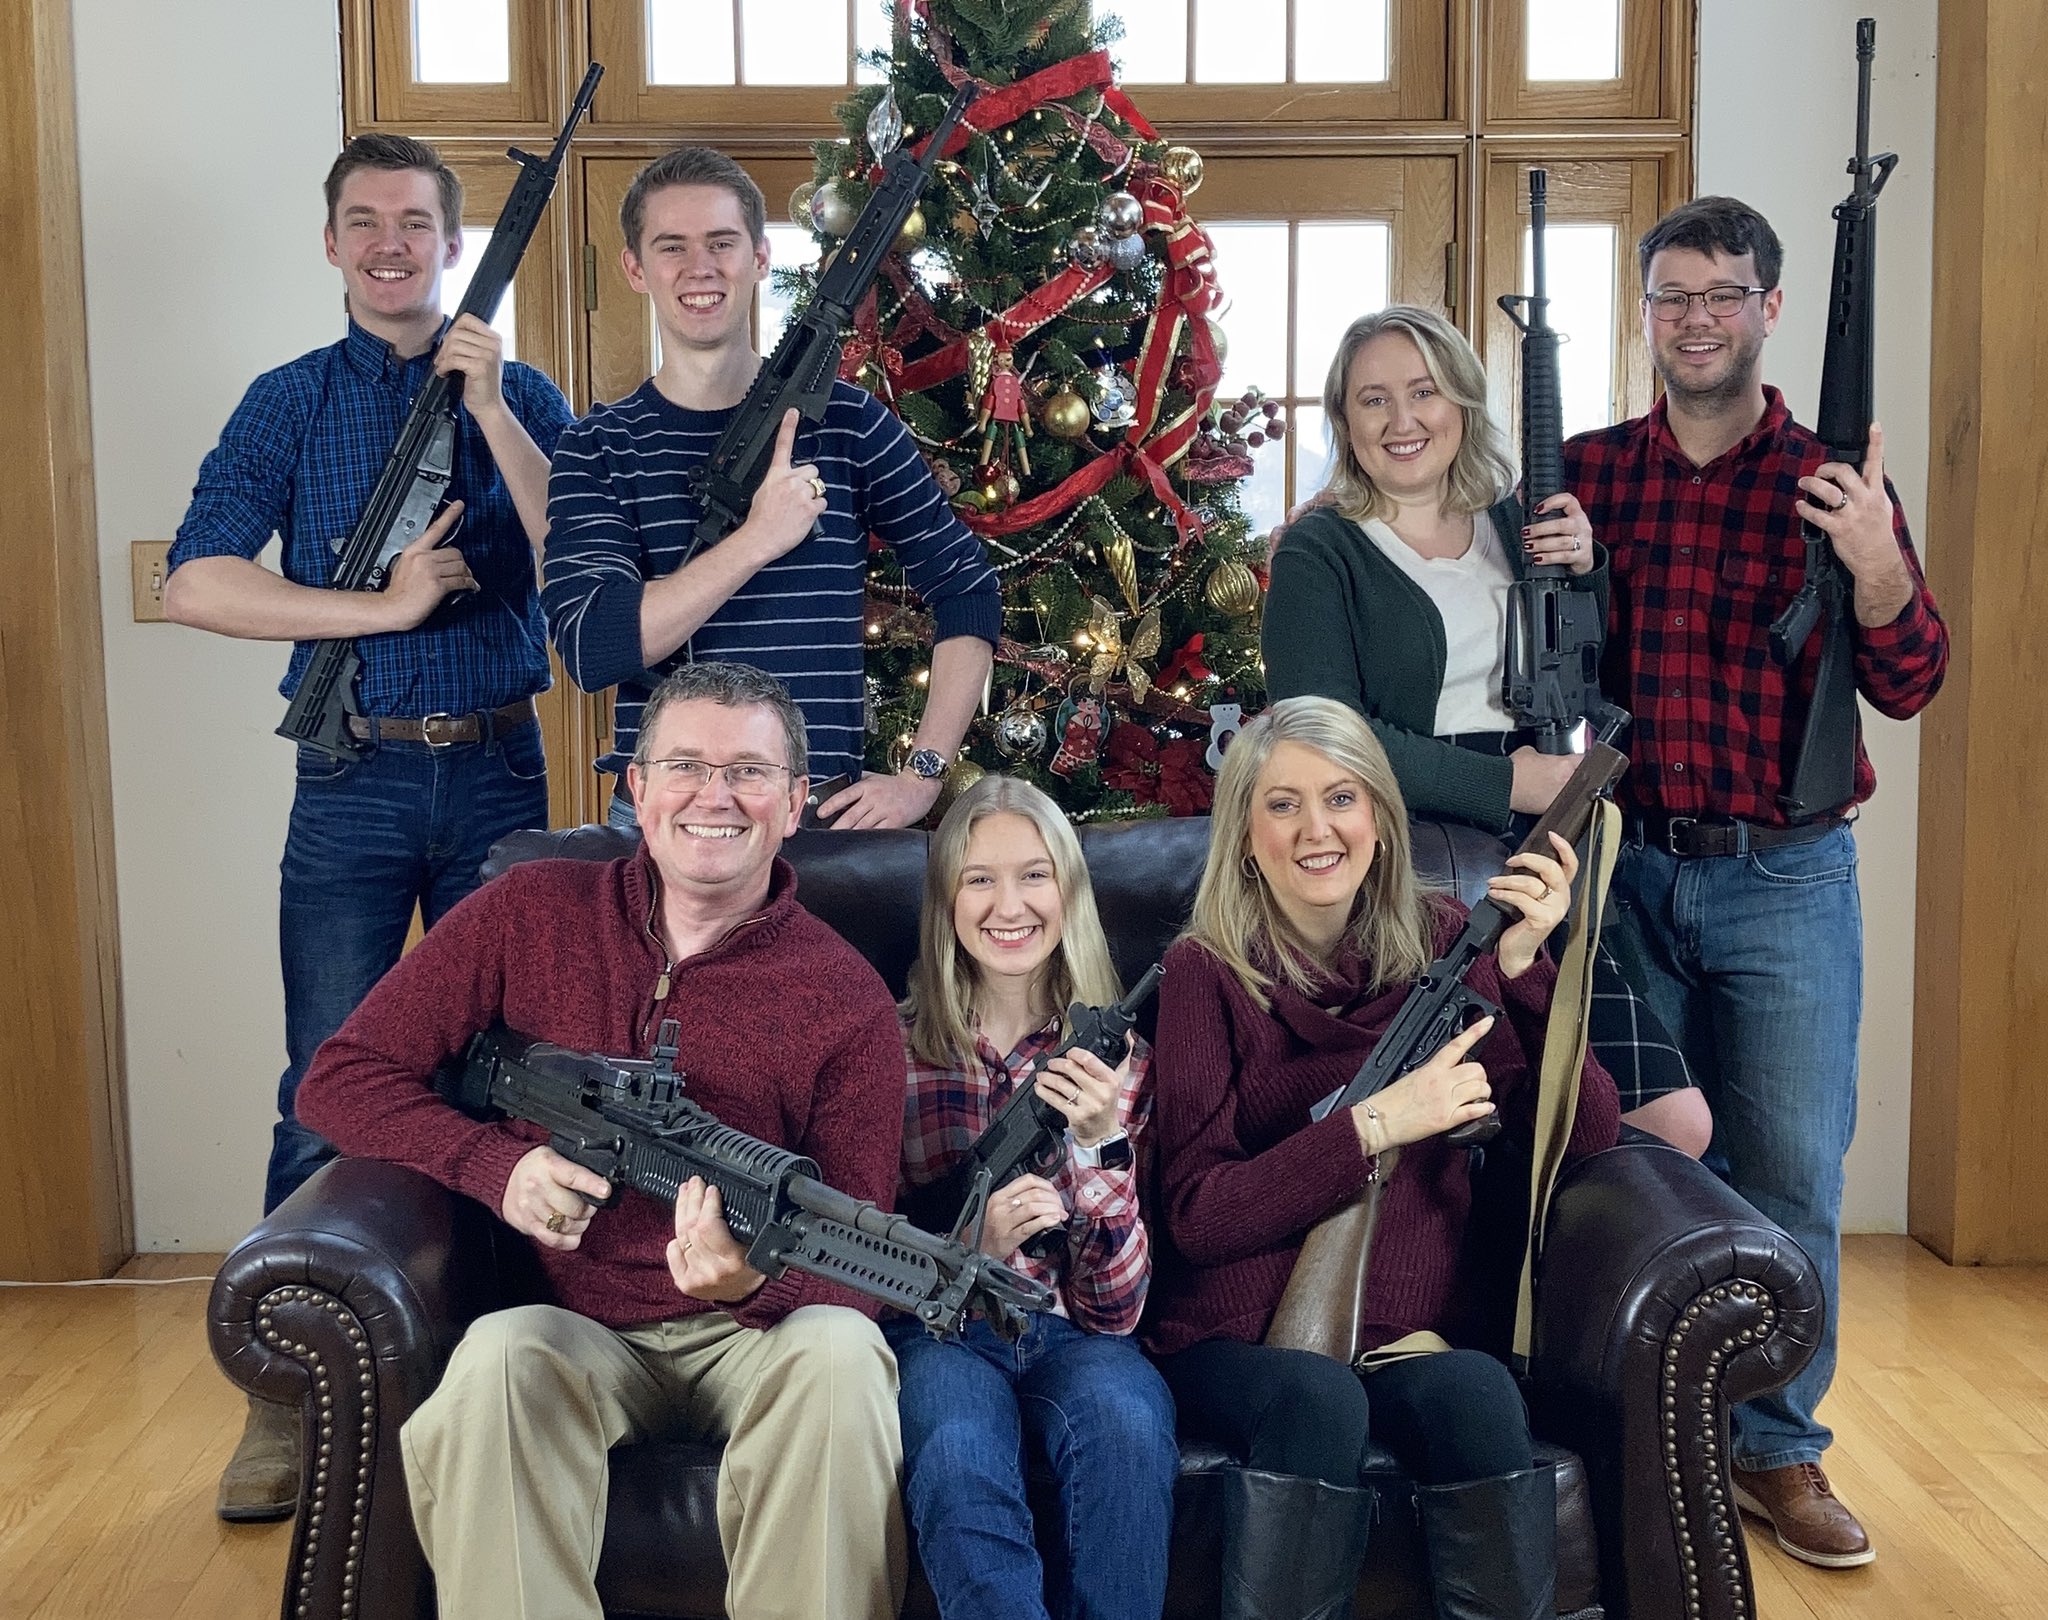 Indignare în SUA, după ce un republican a postat o fotografie cu familia sa cu arme de foc în mână în faţa bradului de Crăciun